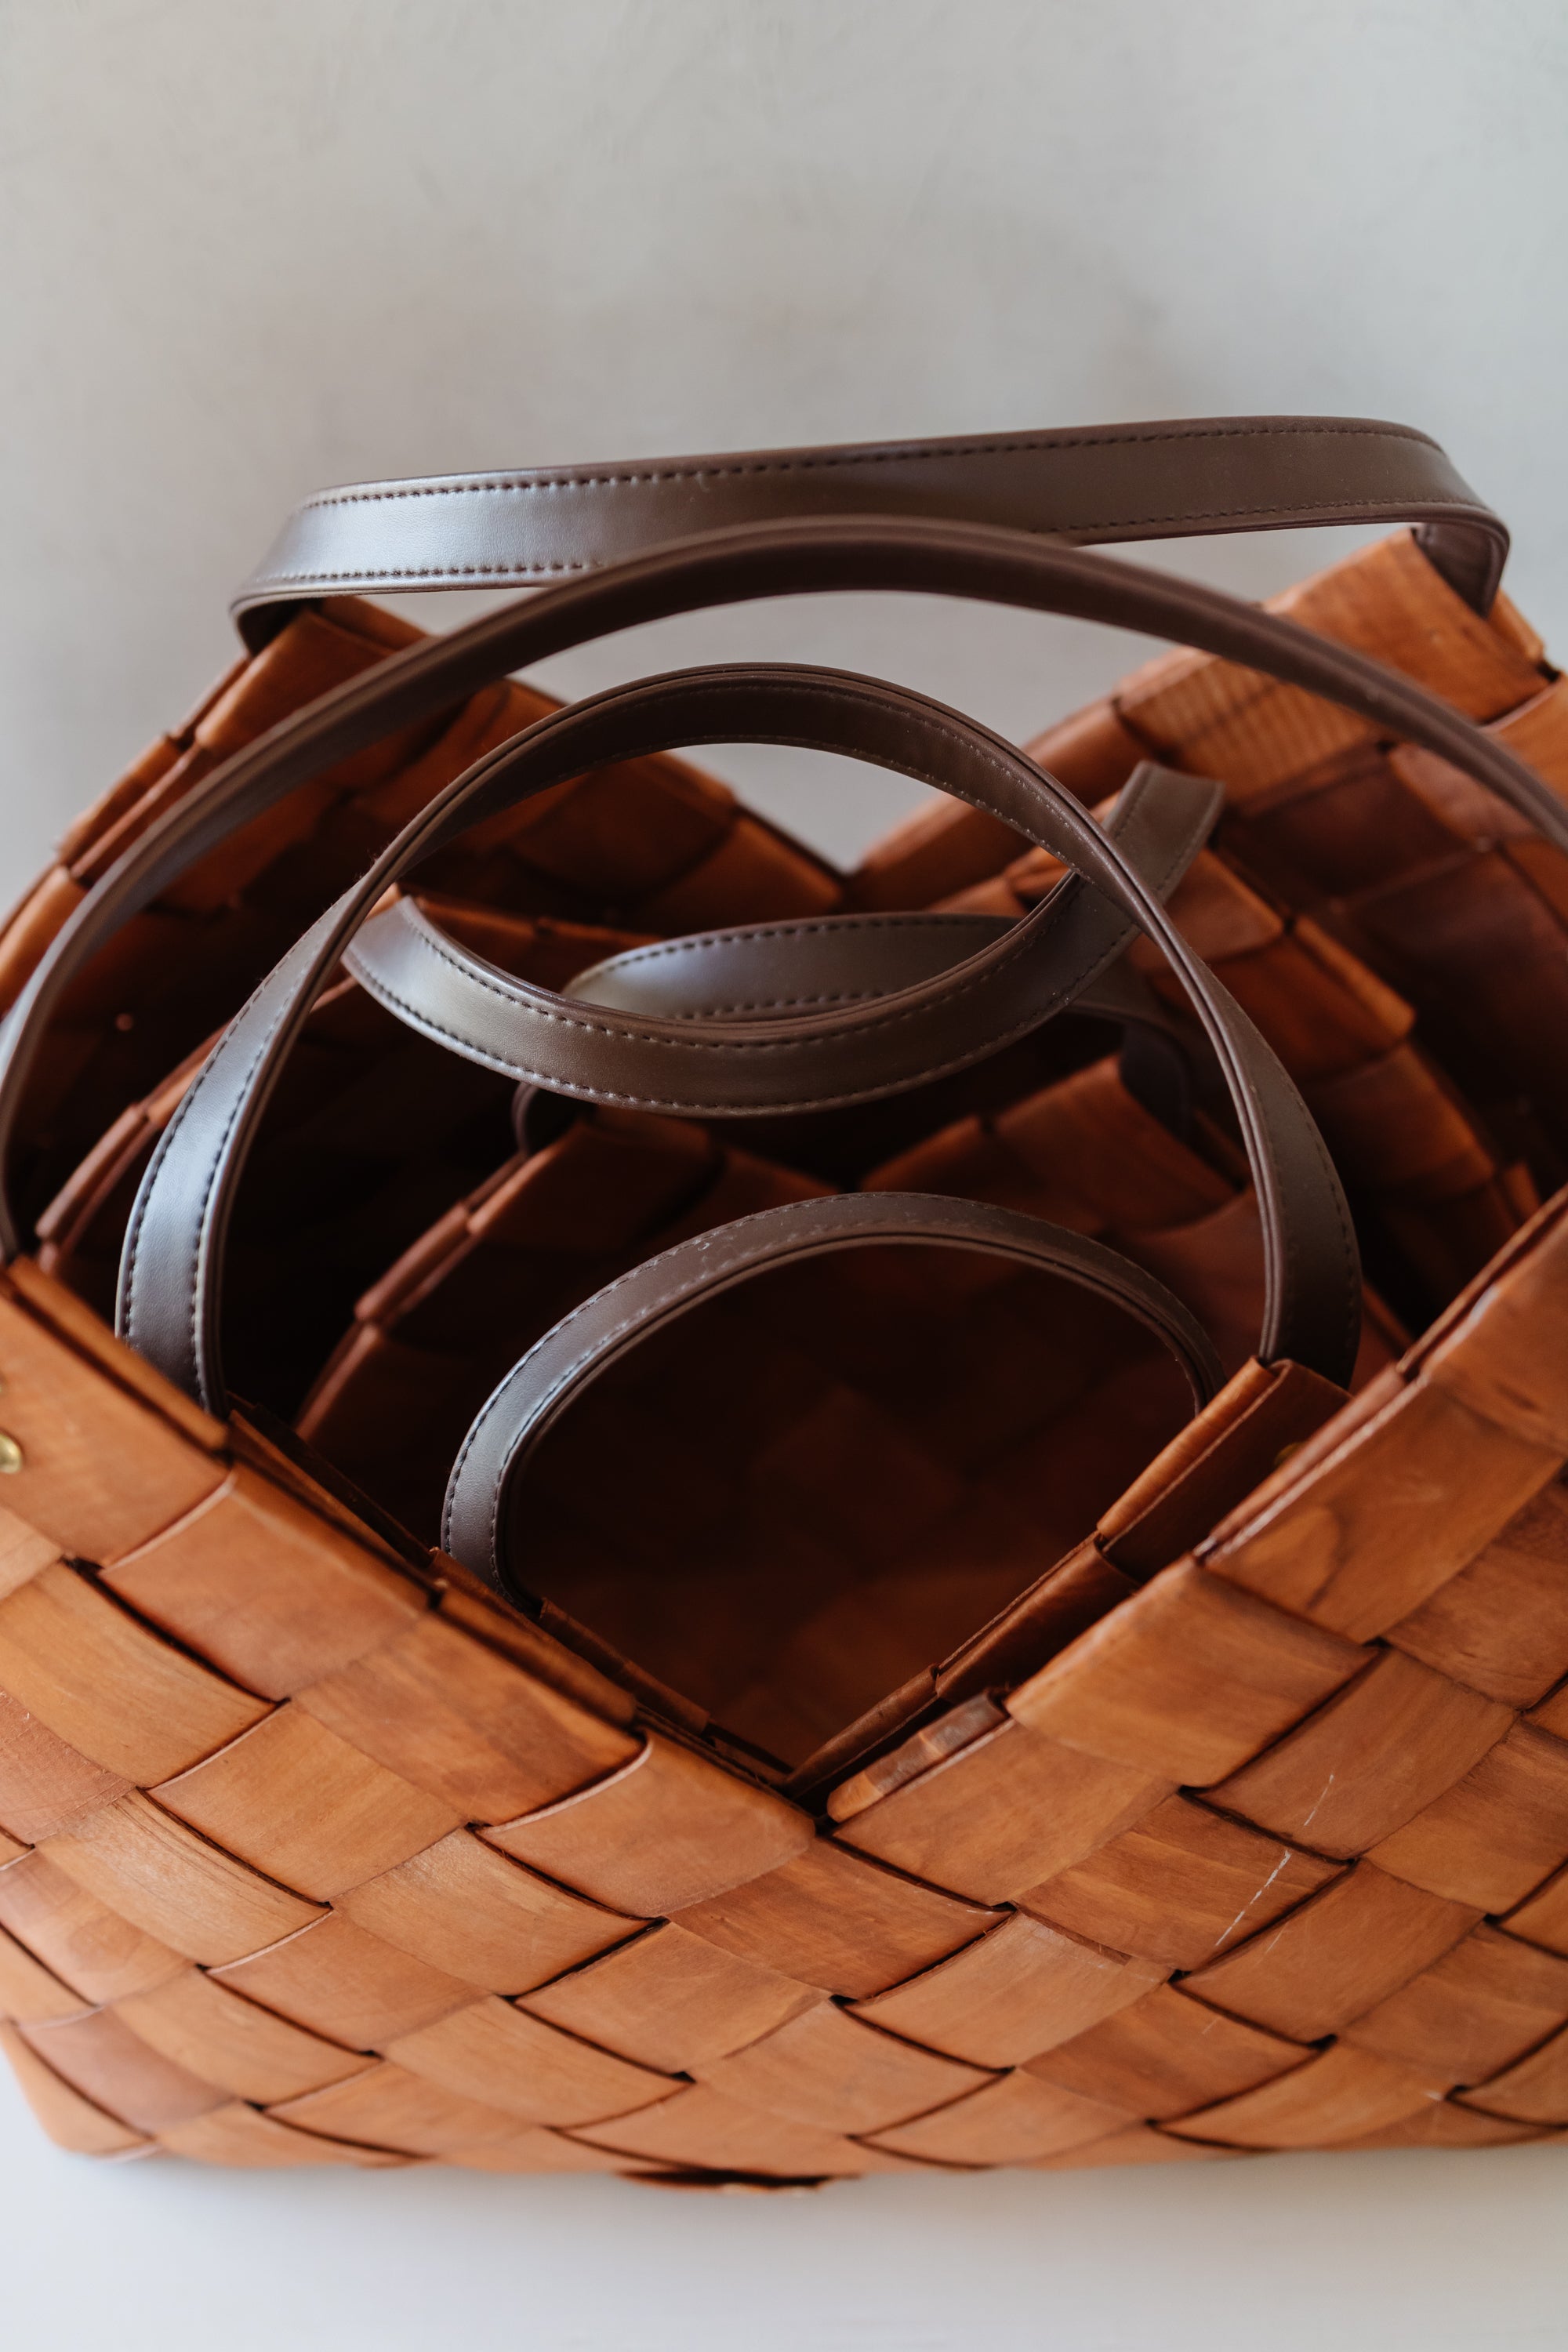 Leather Basket Woven Leather Basket Leather Storage Basket 